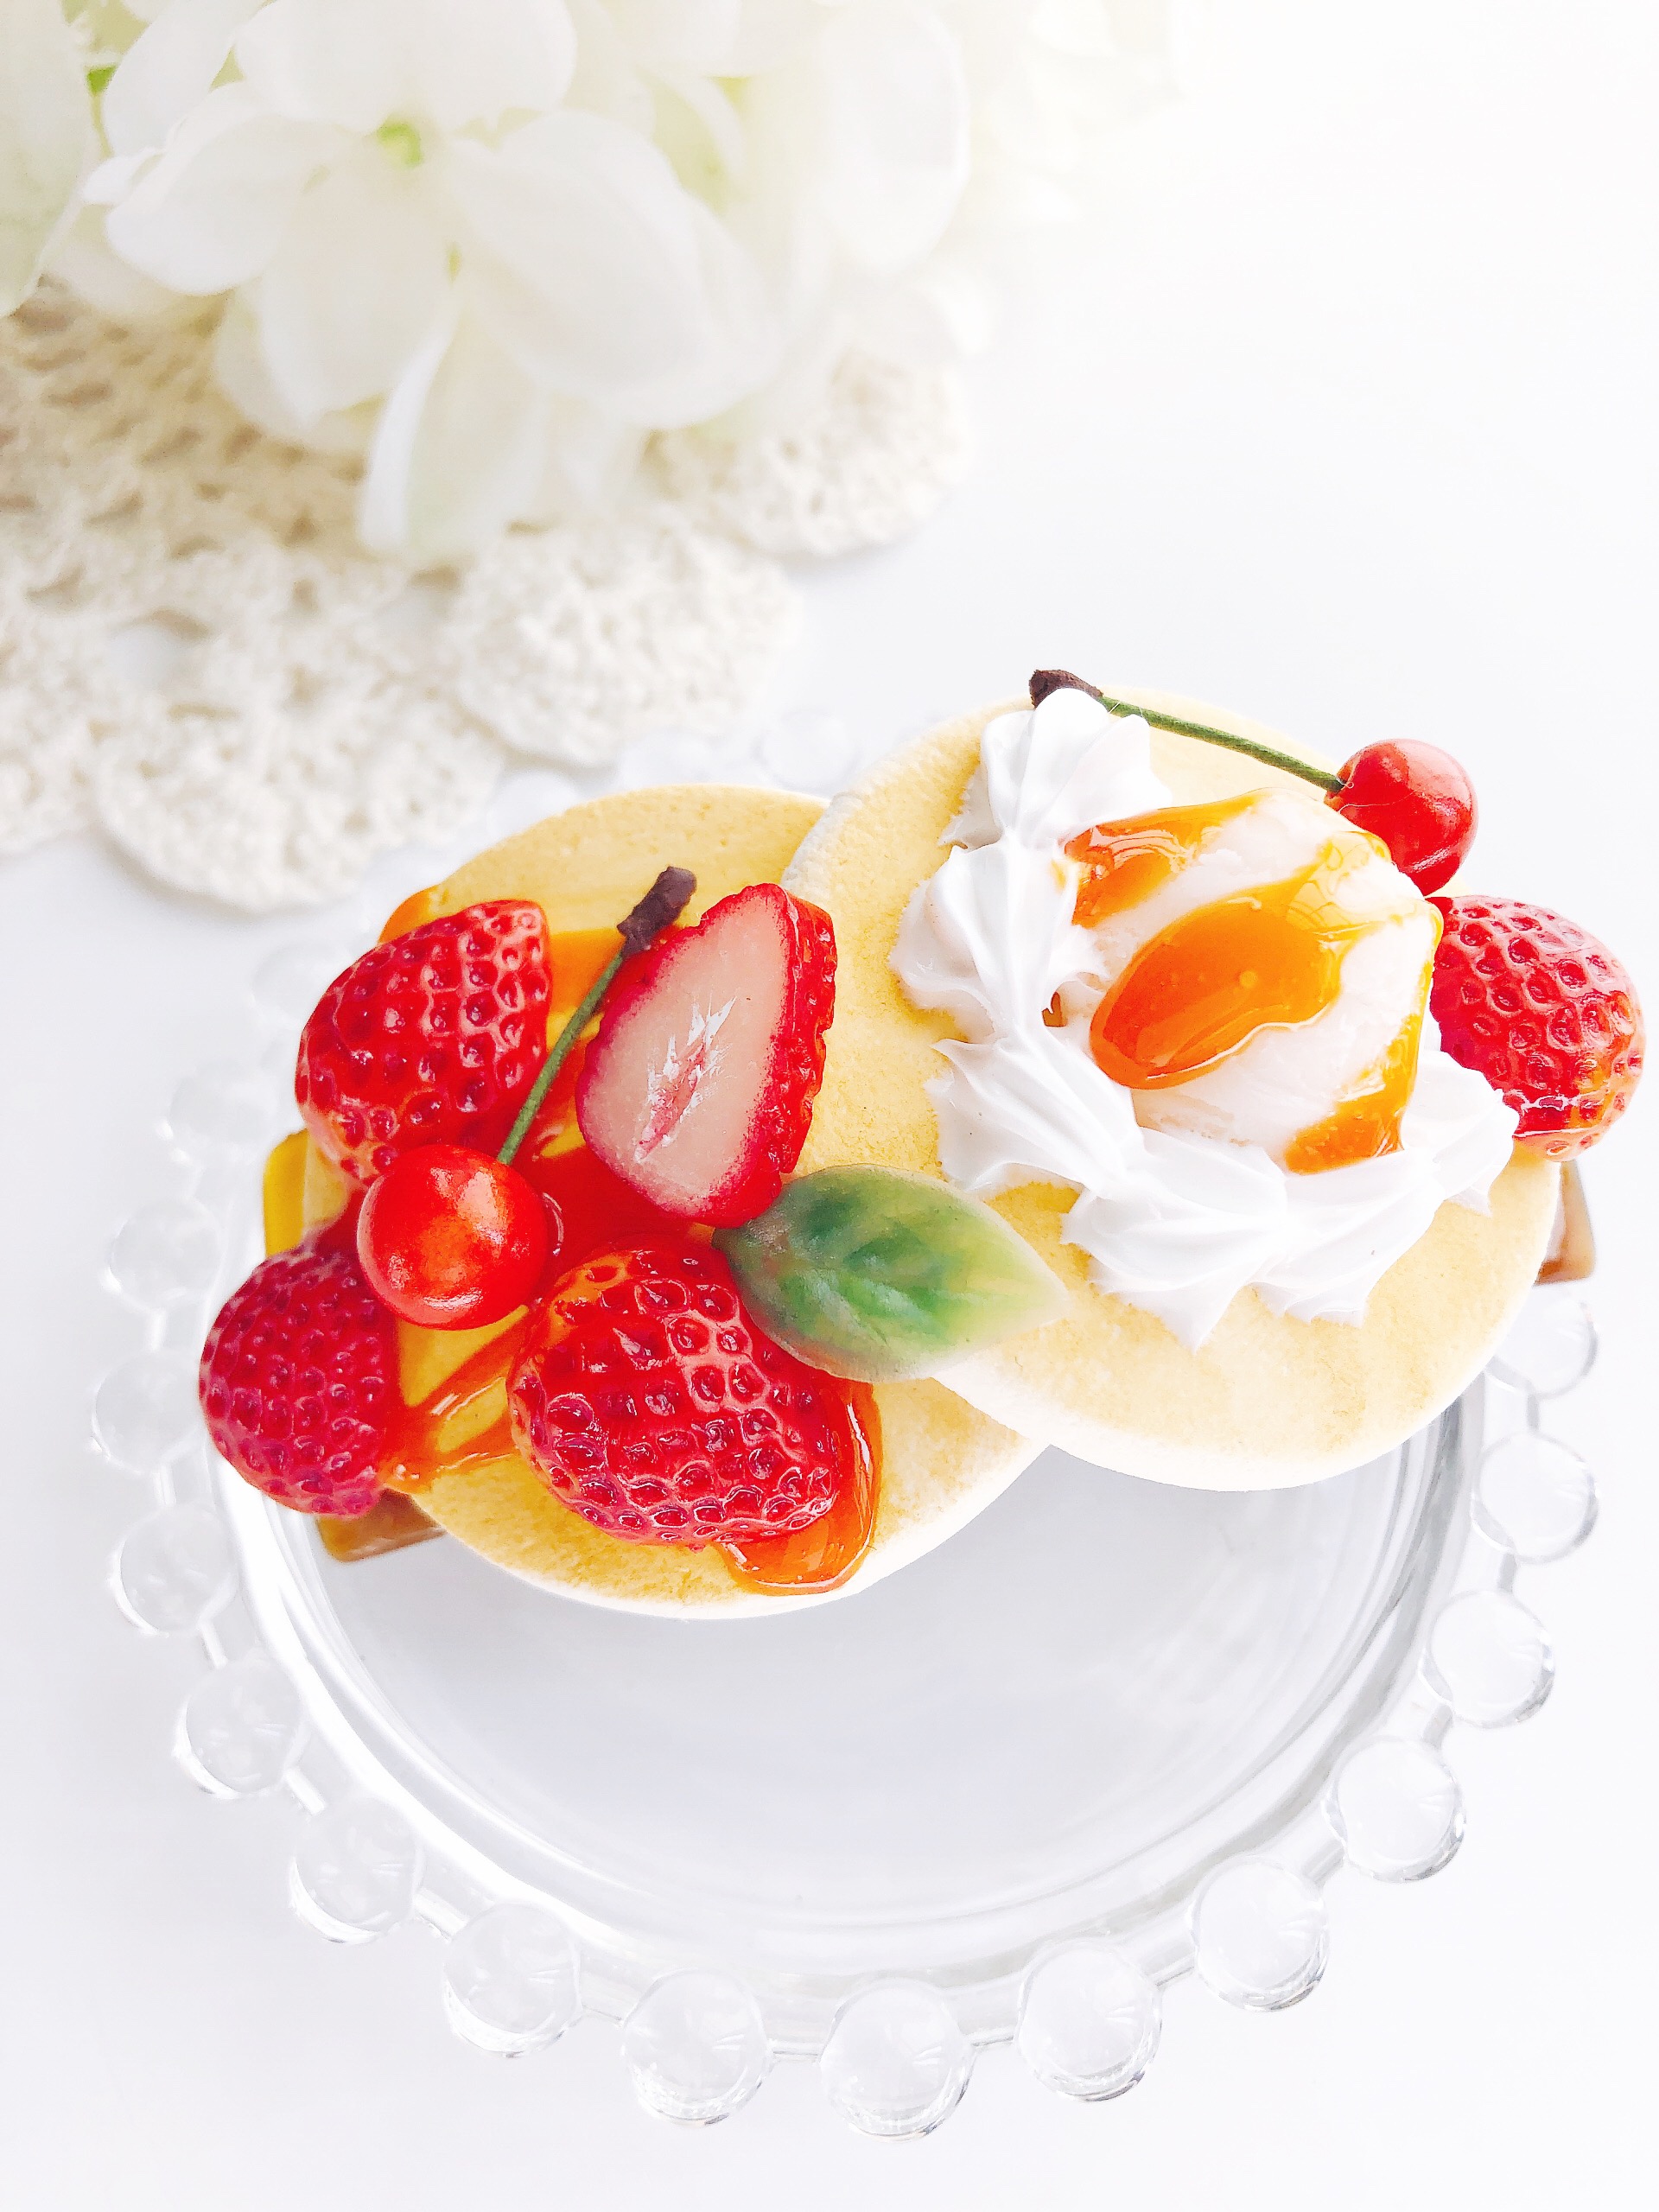 真っ赤な苺パンケーキのバレッタ Strawberry スイーツデコ Iichi ハンドメイド クラフト作品 手仕事品の通販